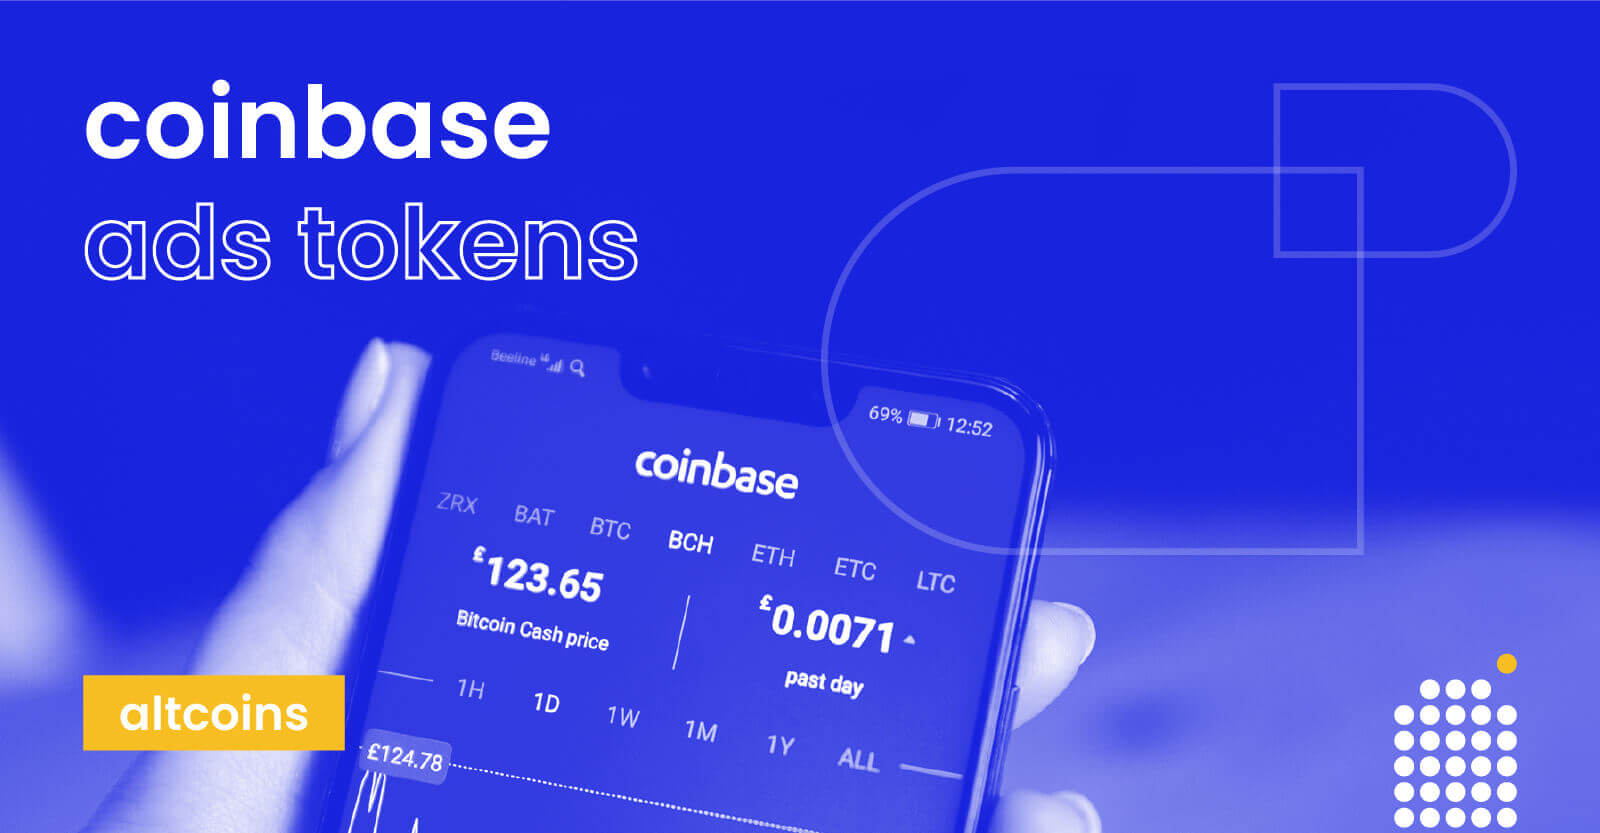 coinbase tokens